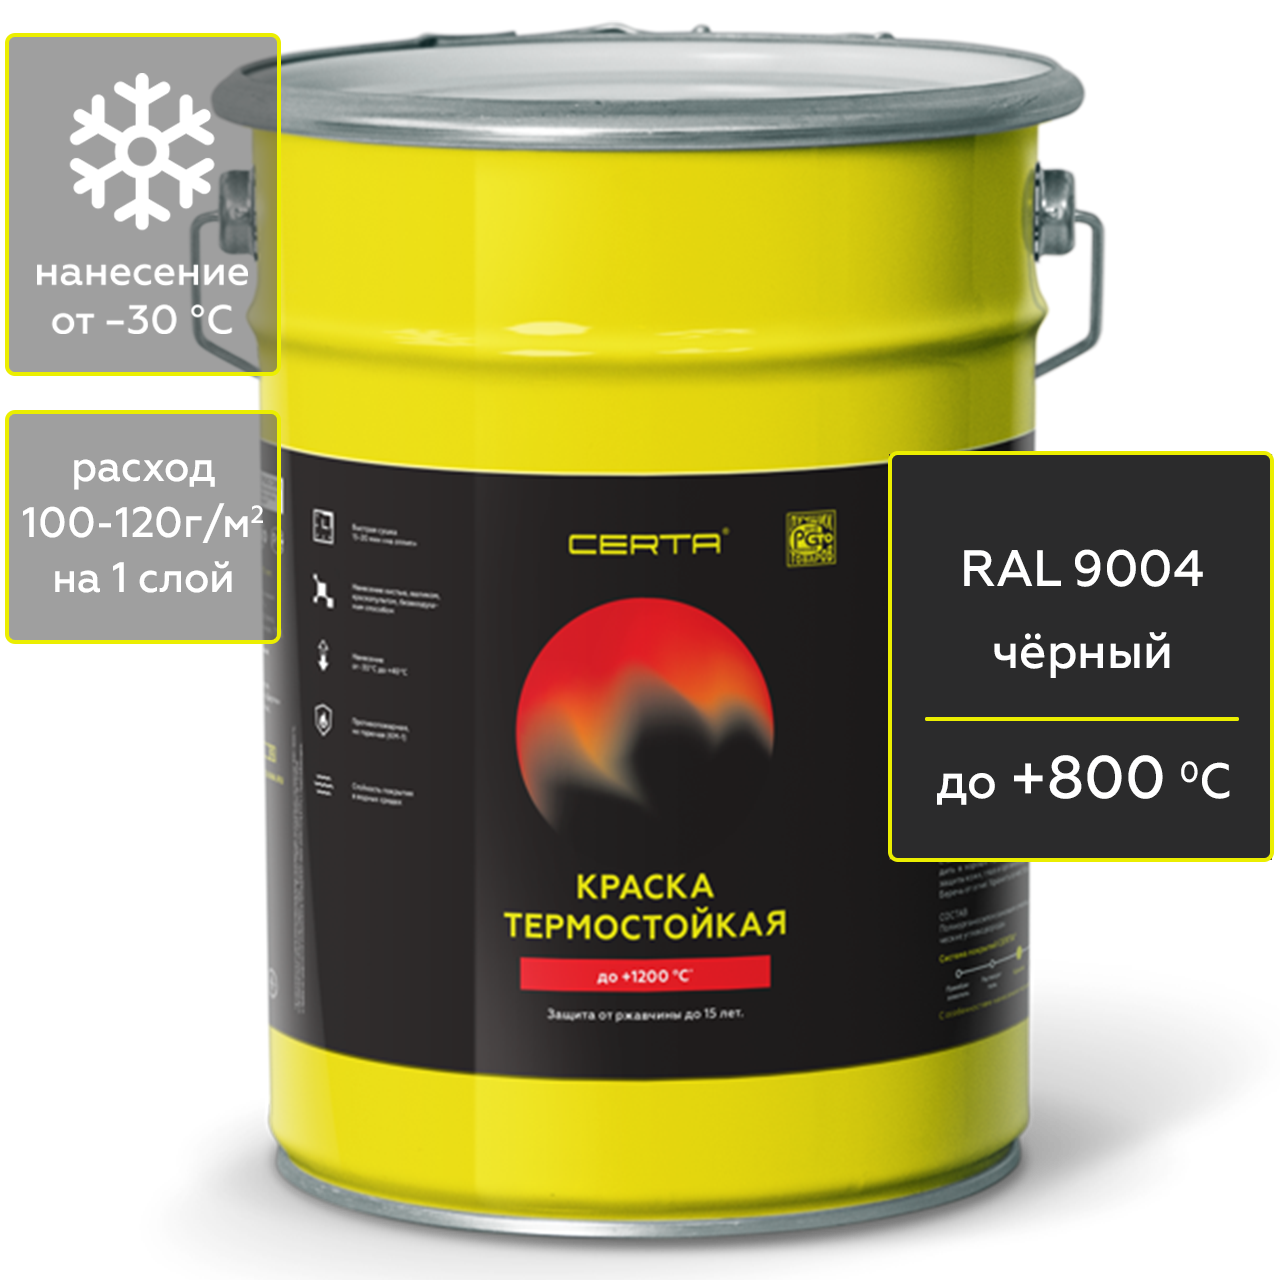 Краска Certa для печей, мангалов и радиаторов, термостойкая, до 800°С, чёрный, 4 кг герметик для печей penosil